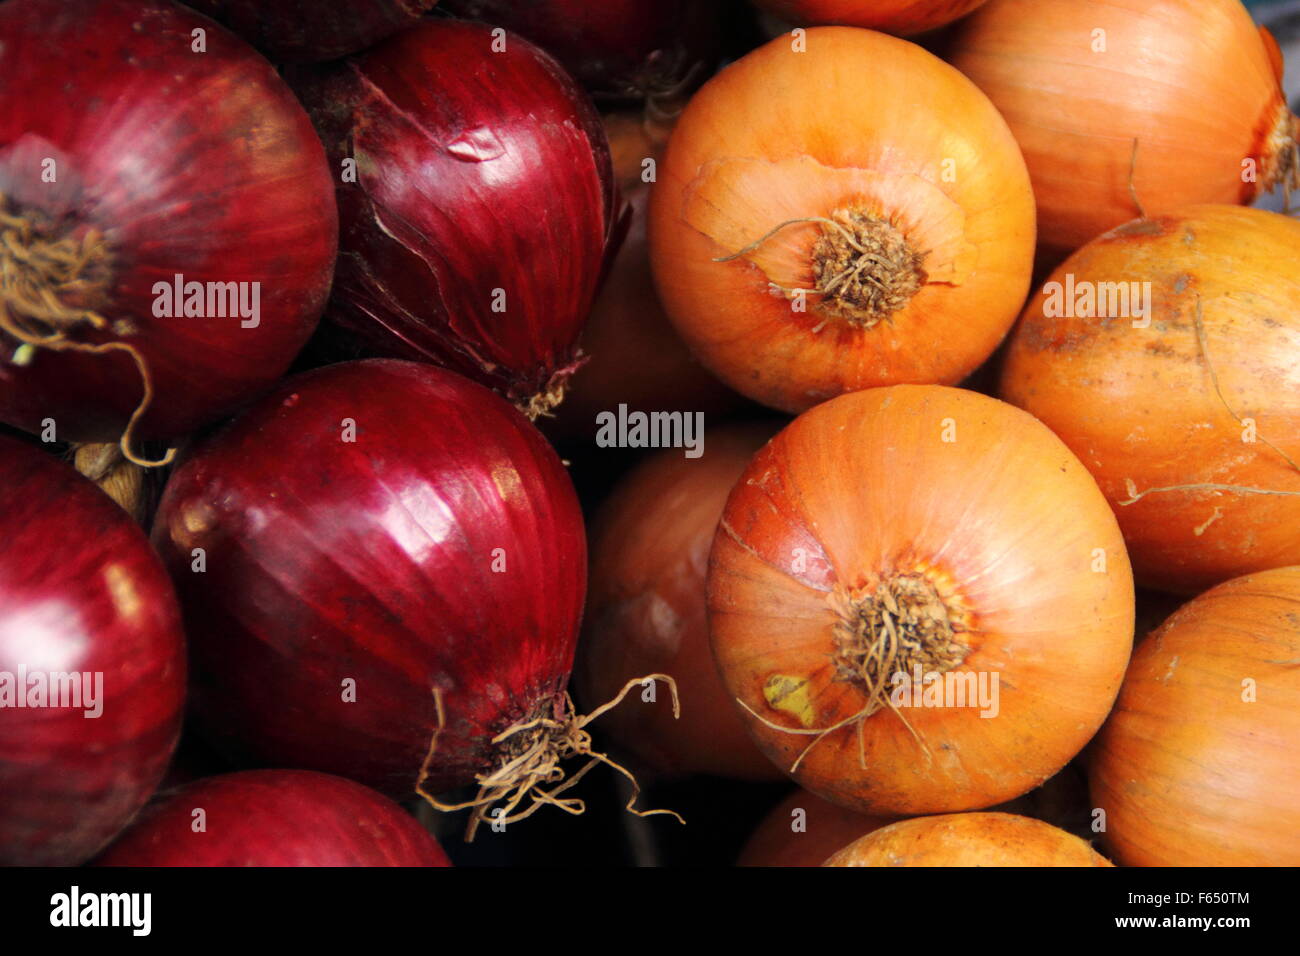 Allium cepa. Red and yellow onions. UK Stock Photo